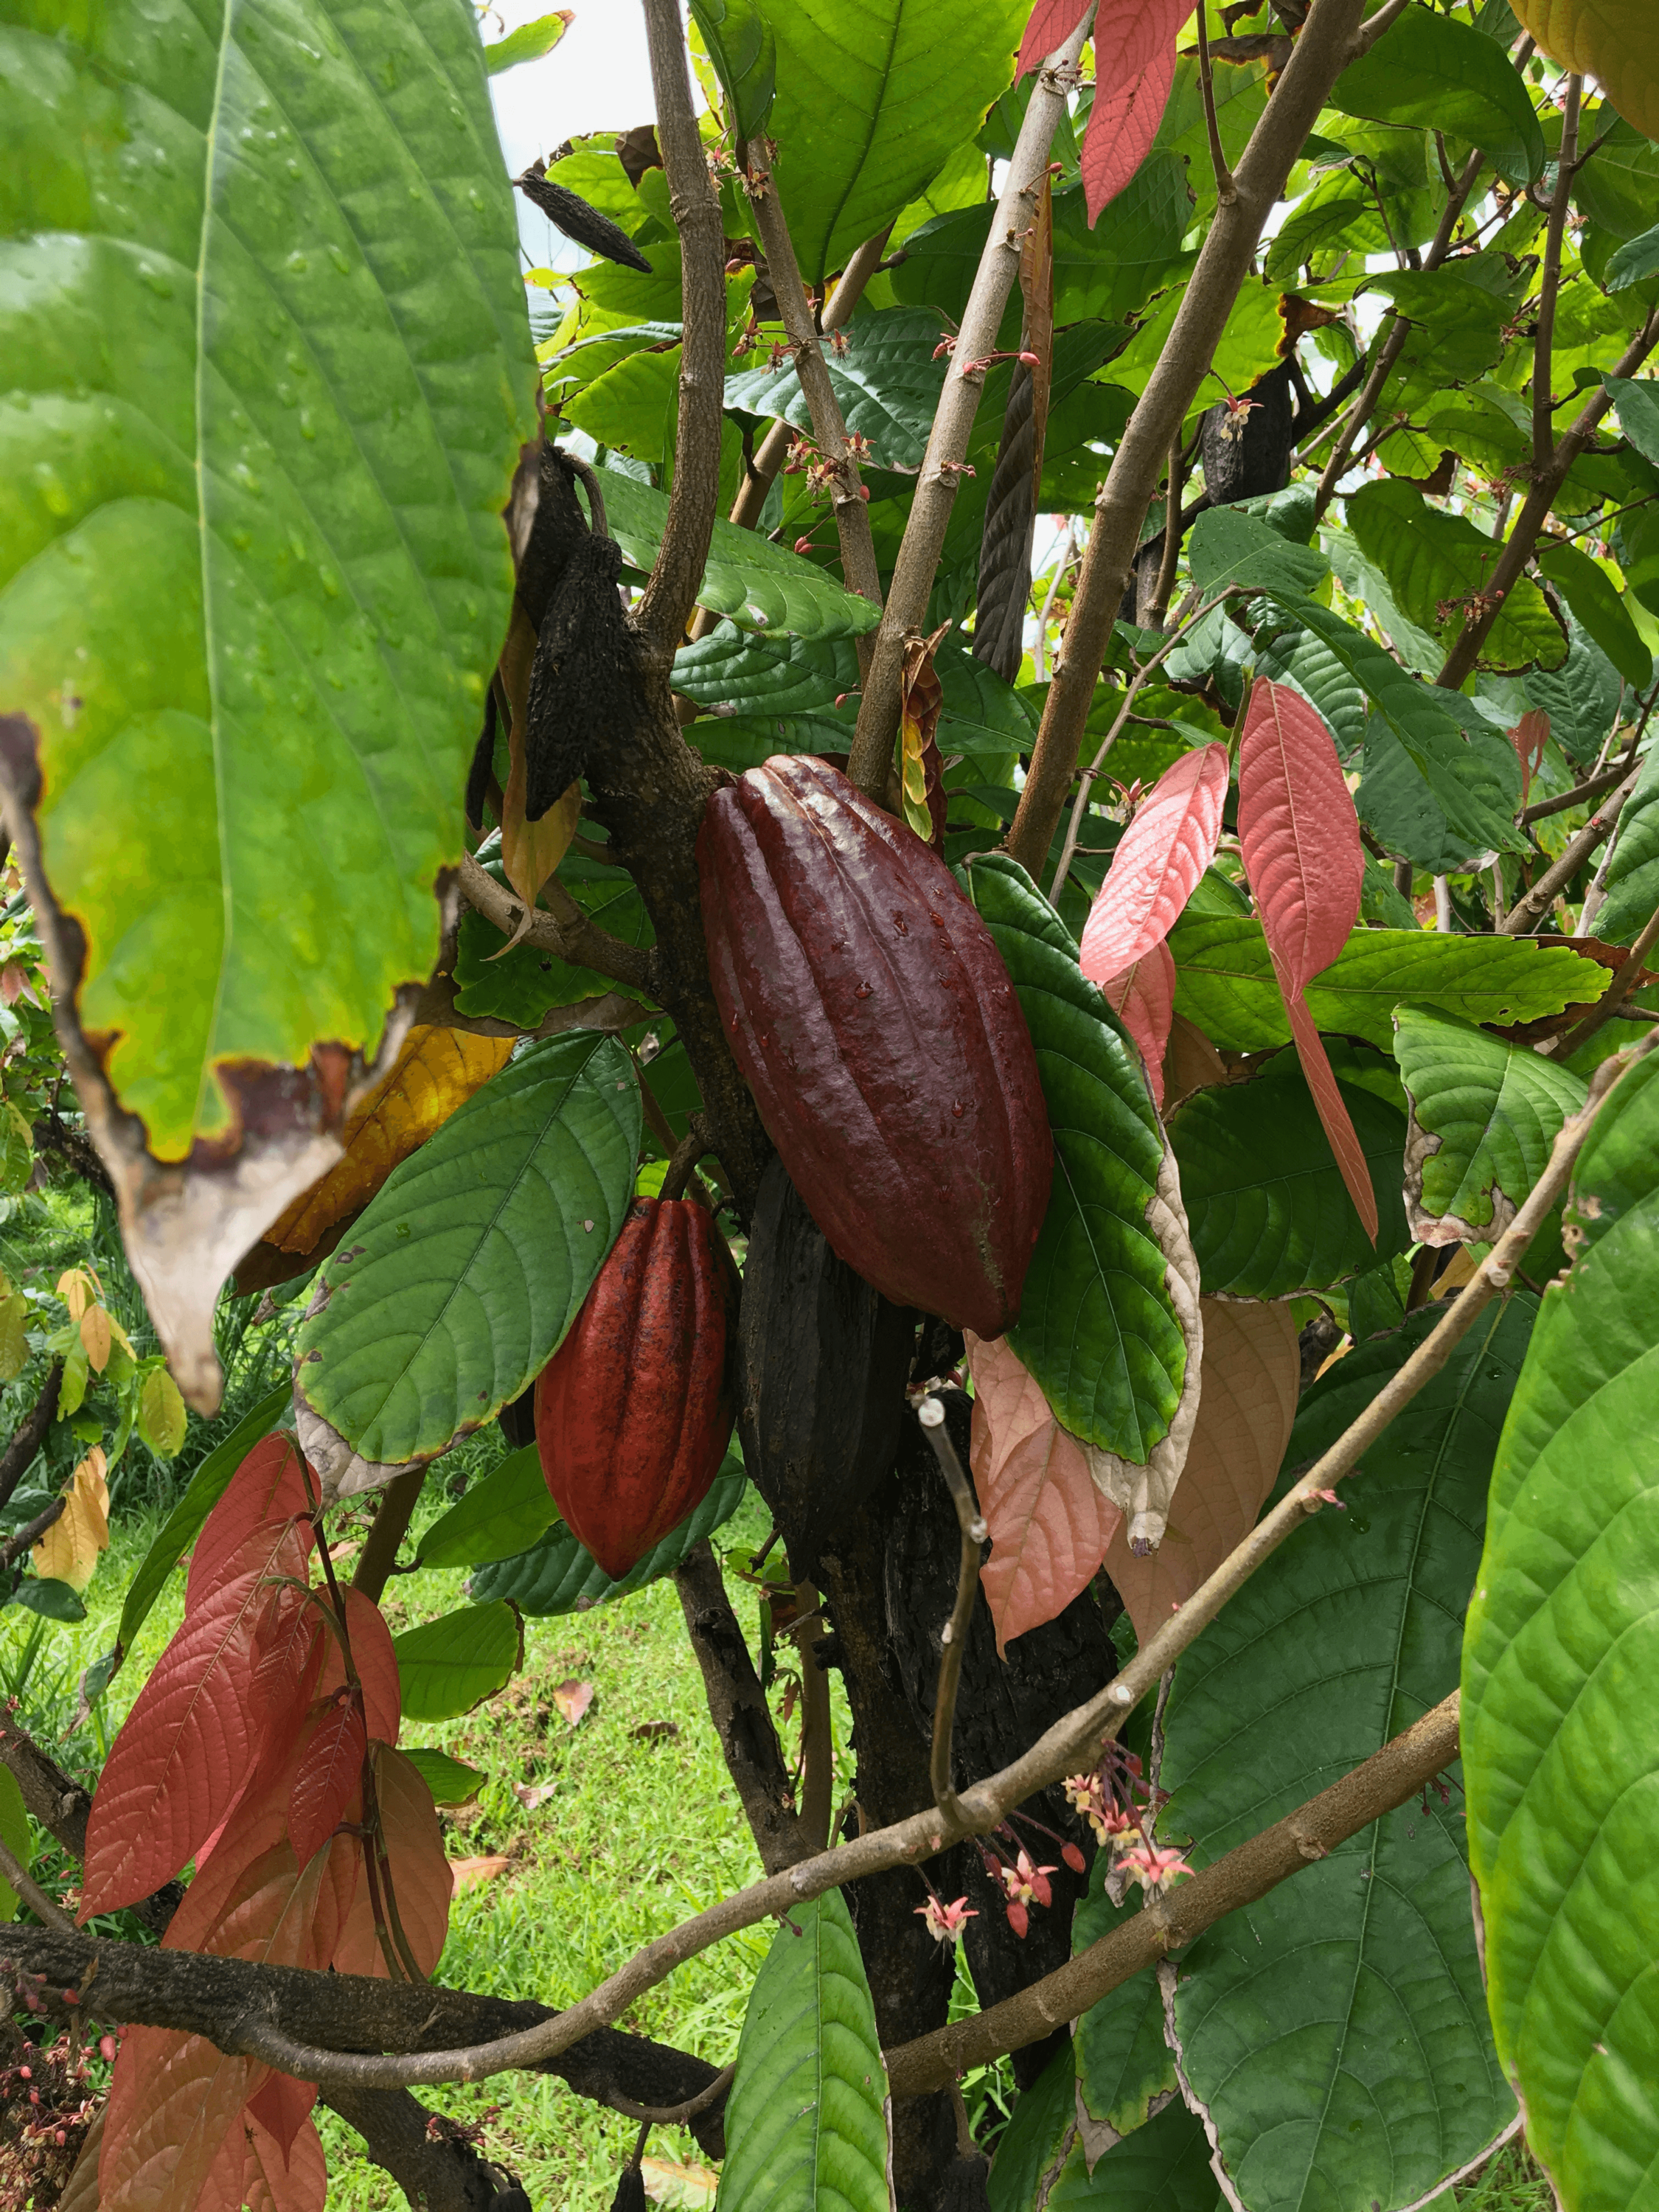 Cacao pod